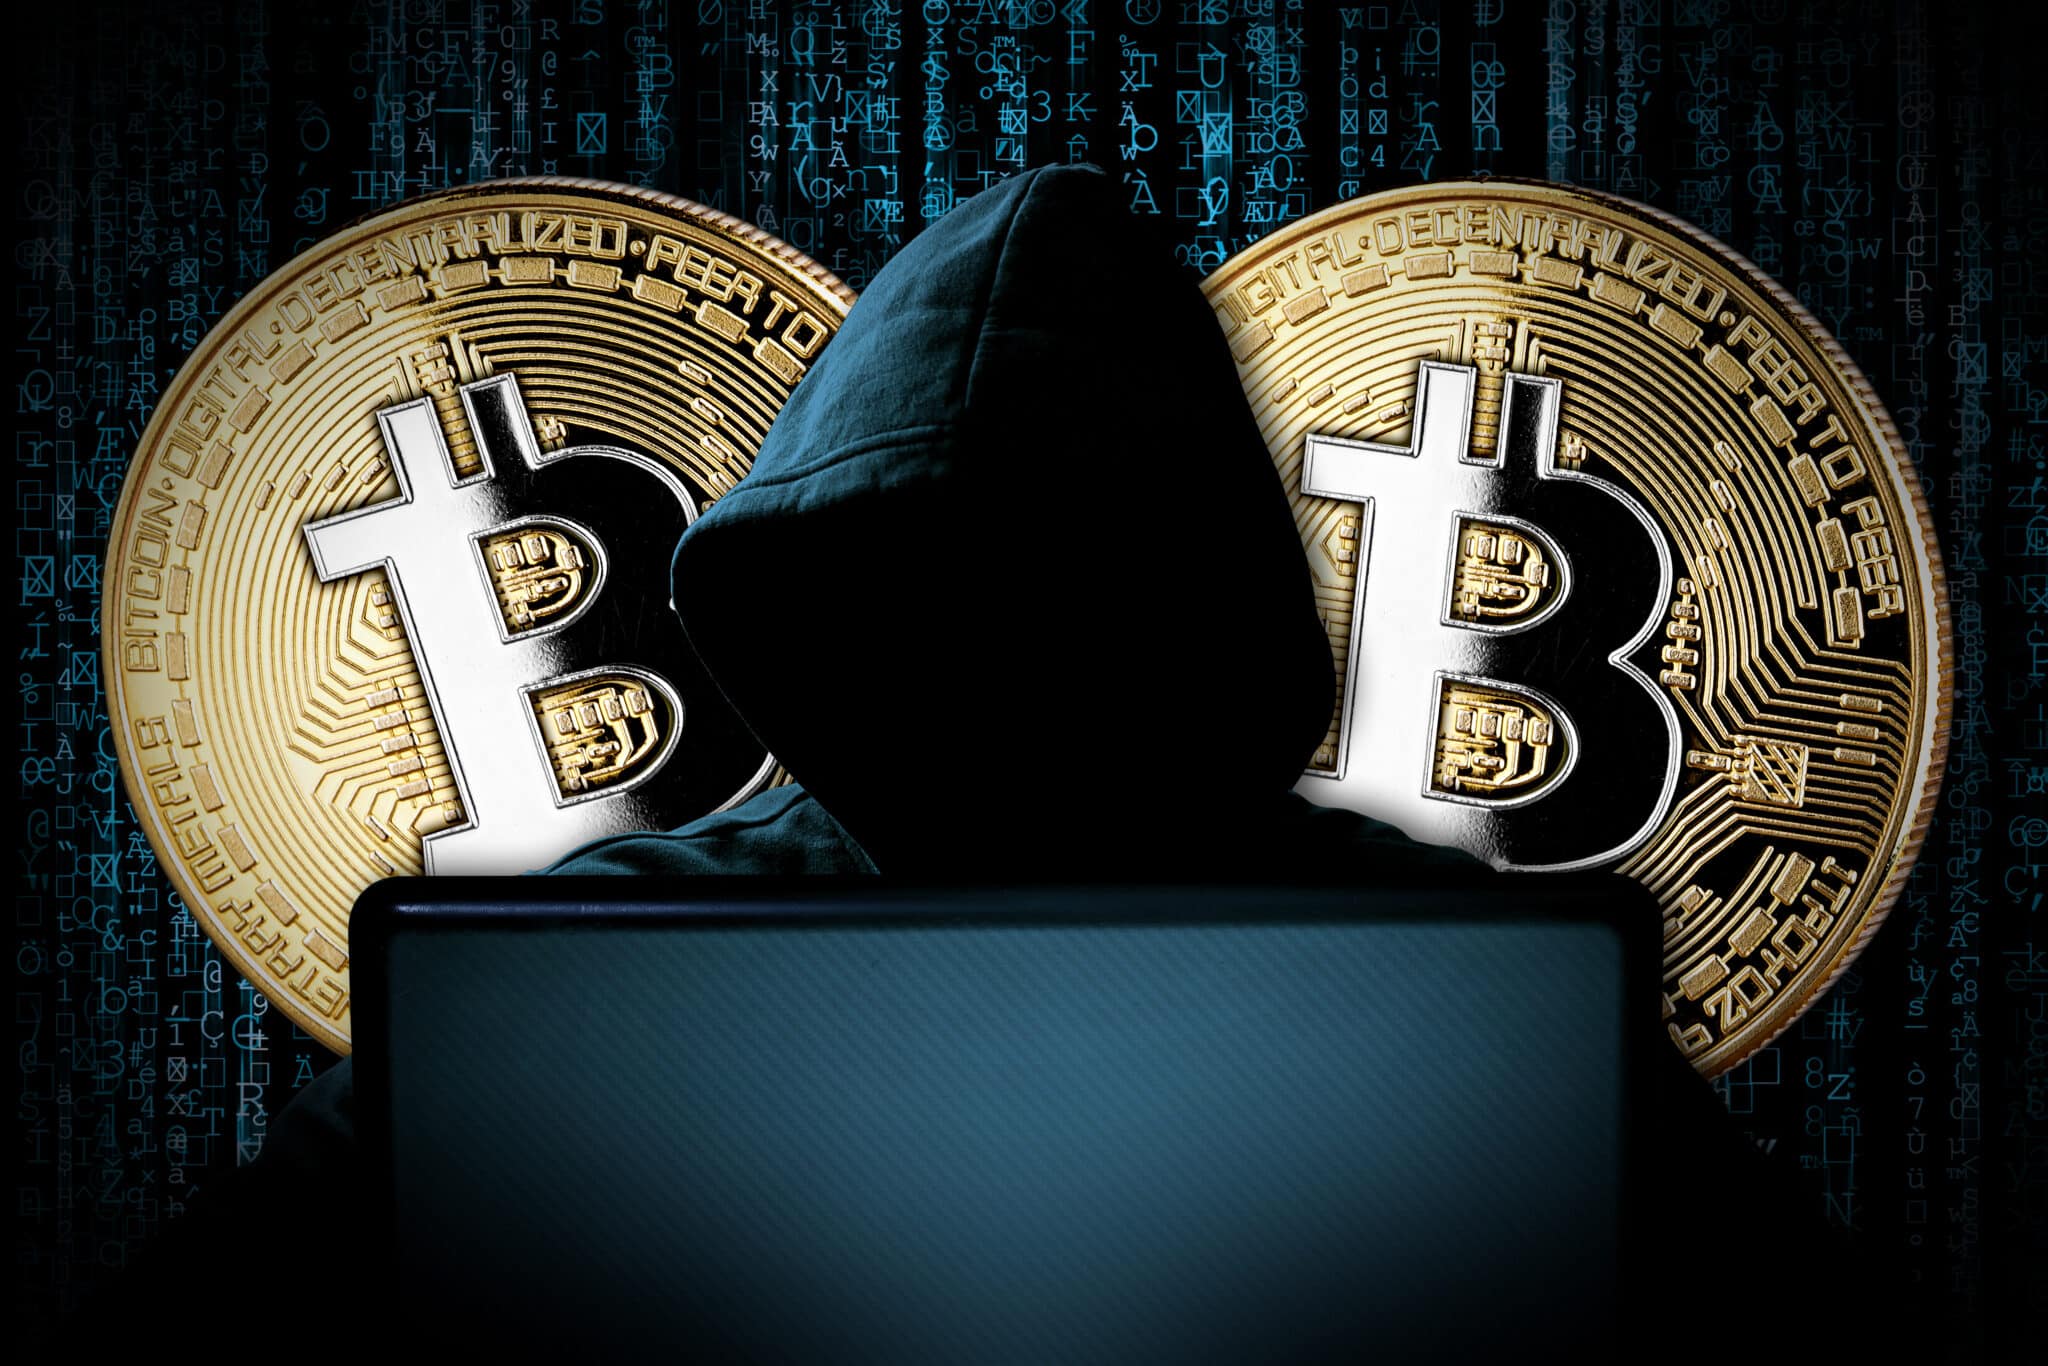 Une personne portant une capuche et dont le visage est caché sous l'ombre, devant un ordinateur portable portant. Deux tokens bitcoin apparaissent derrière elle.